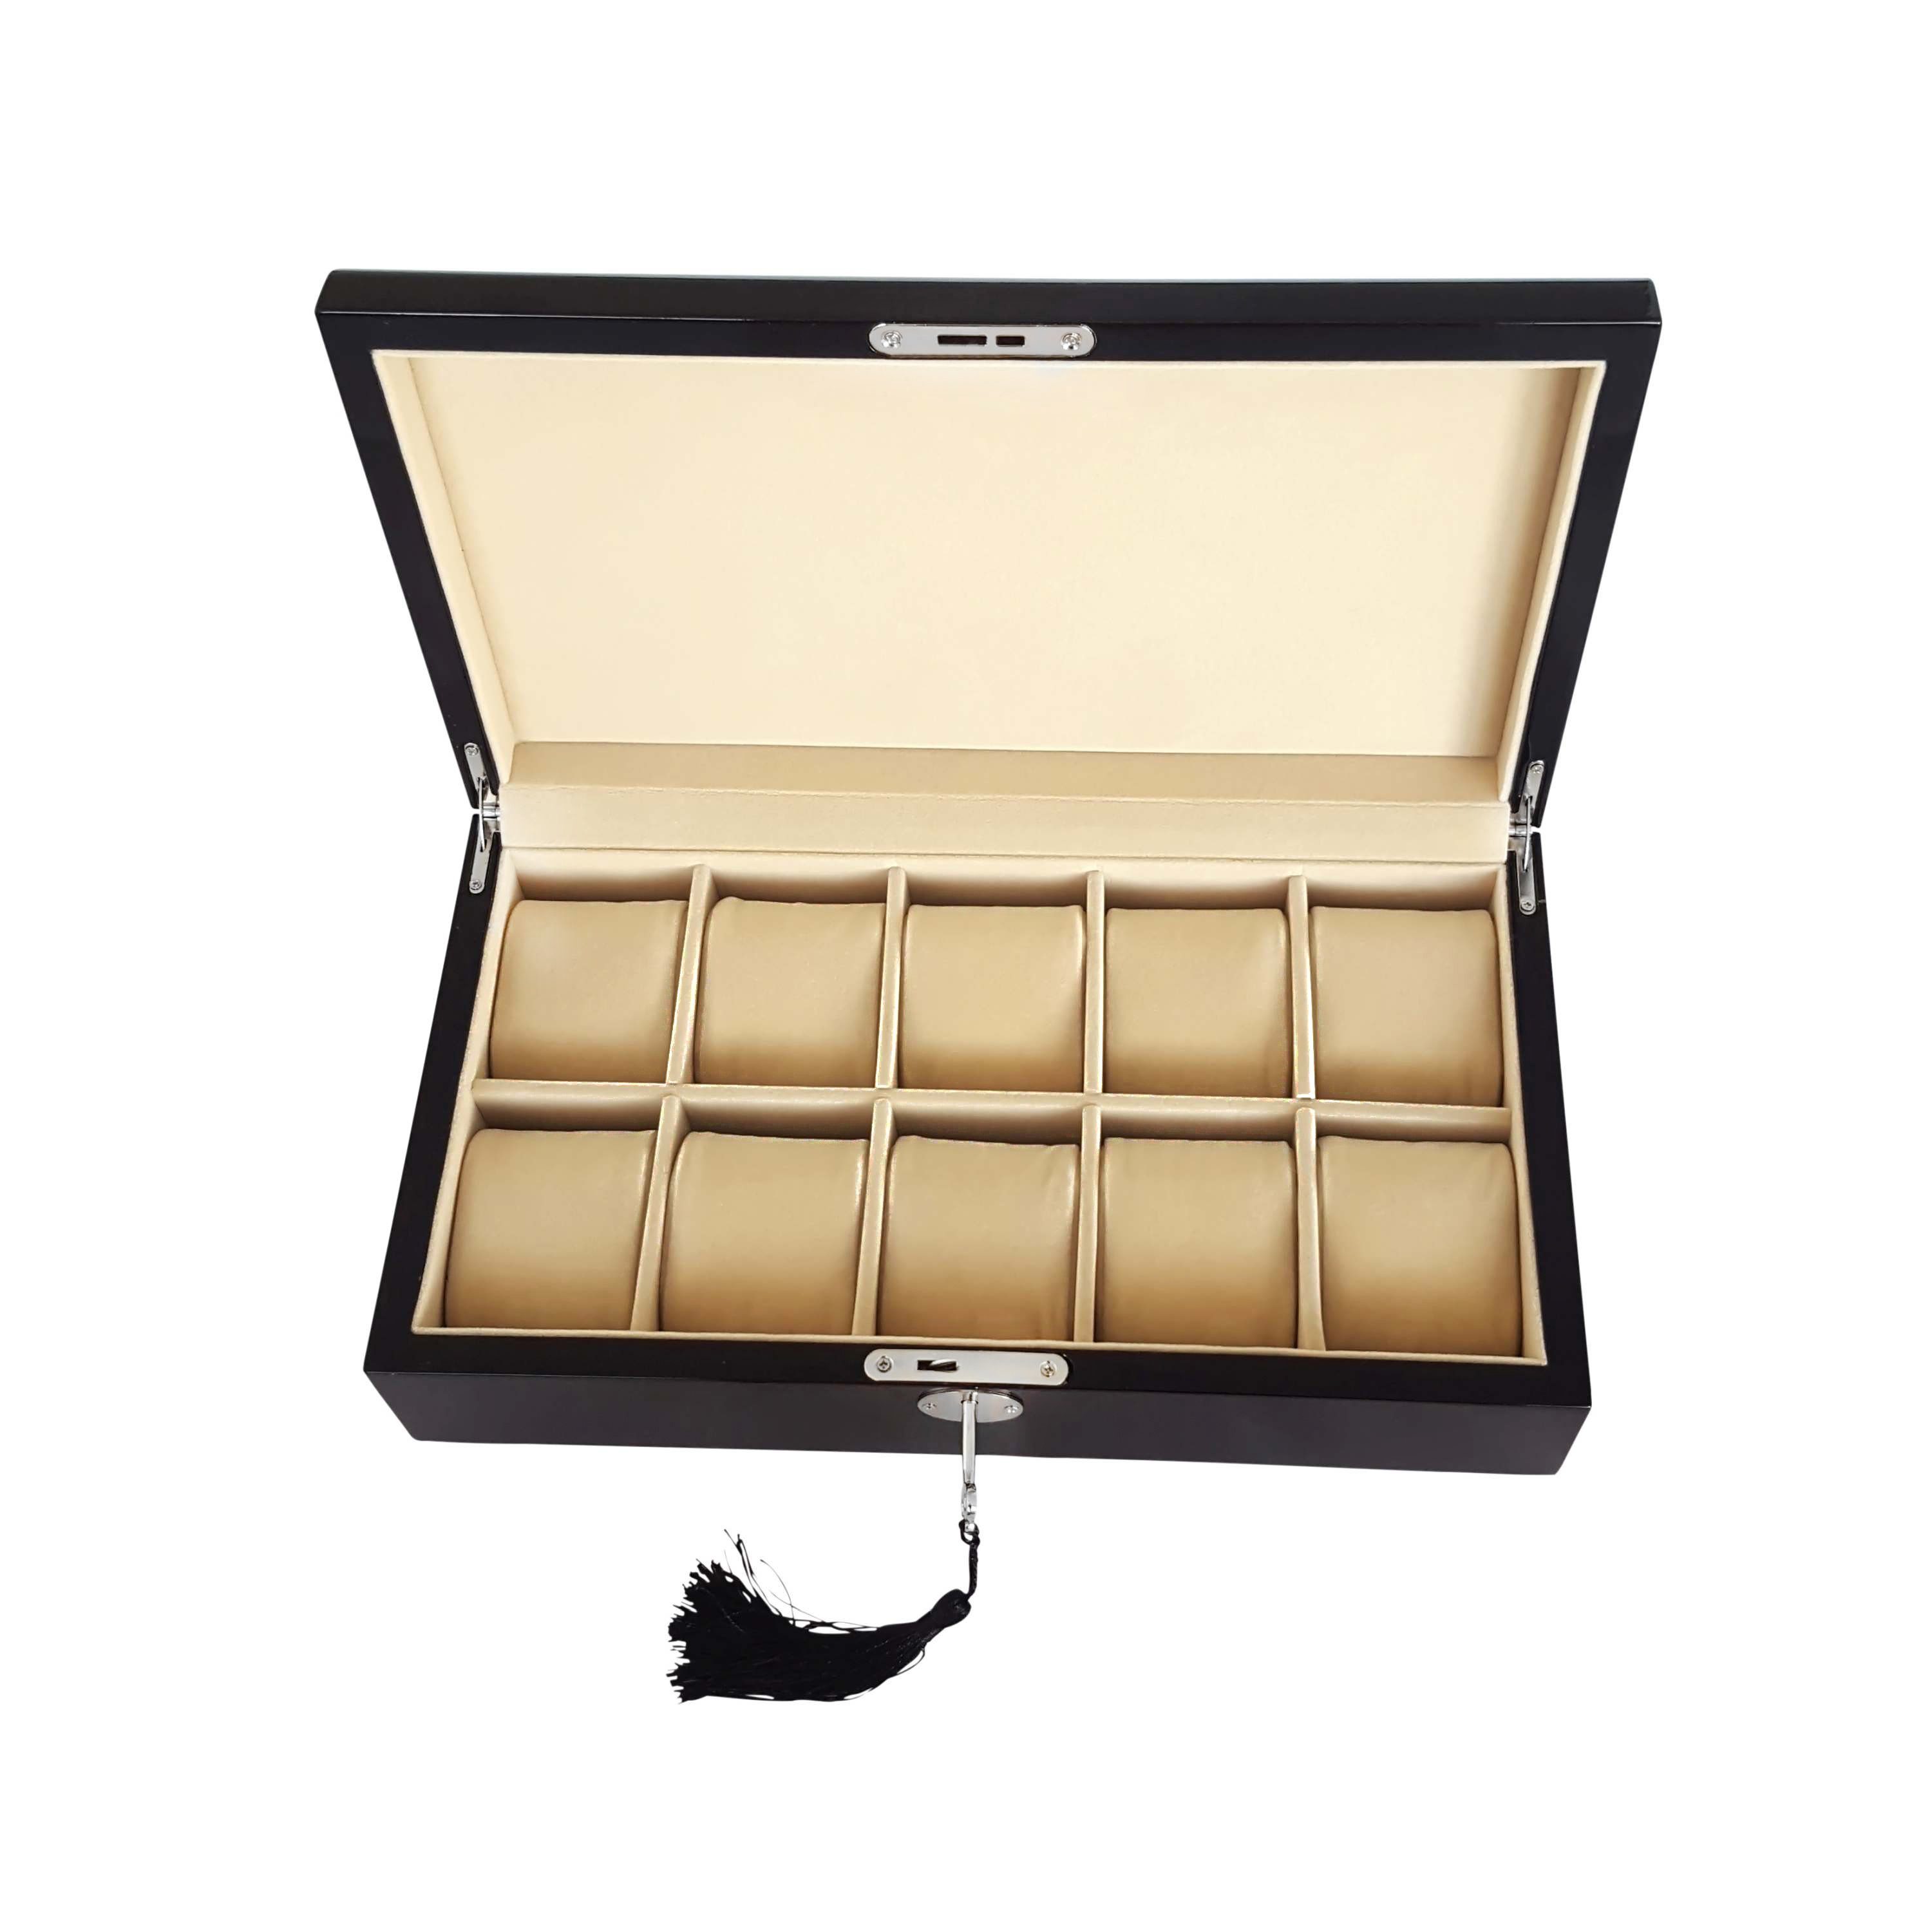 Lindberg&Sons Uhrenbox Premium Uhrenbox für die elegante Aufbewahrung von  bis zu 10 Uhren